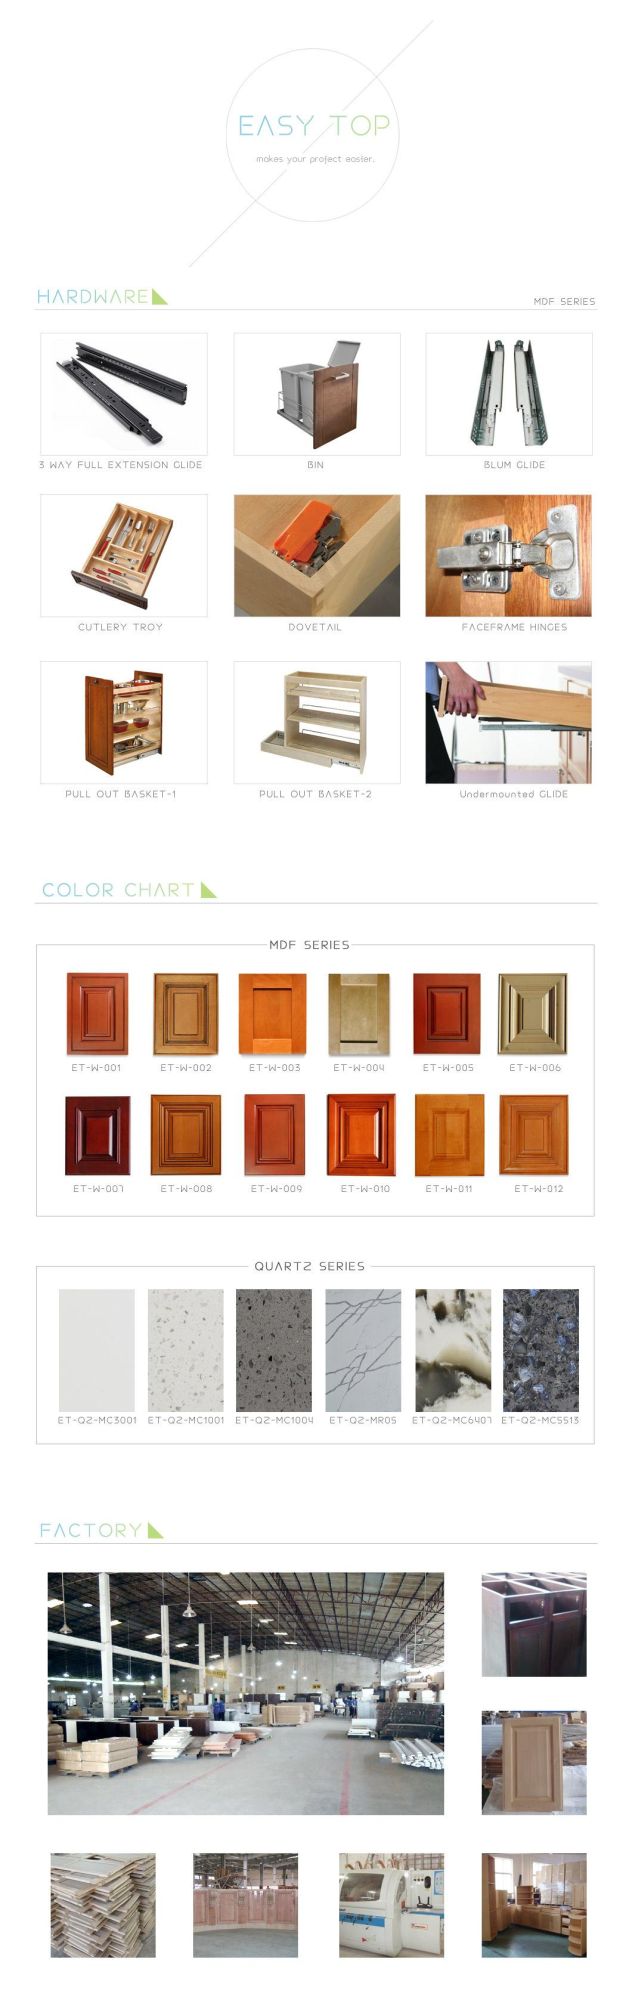 Cabinets Design Modern Style Shaker Door Grey Kitchen Cabinet